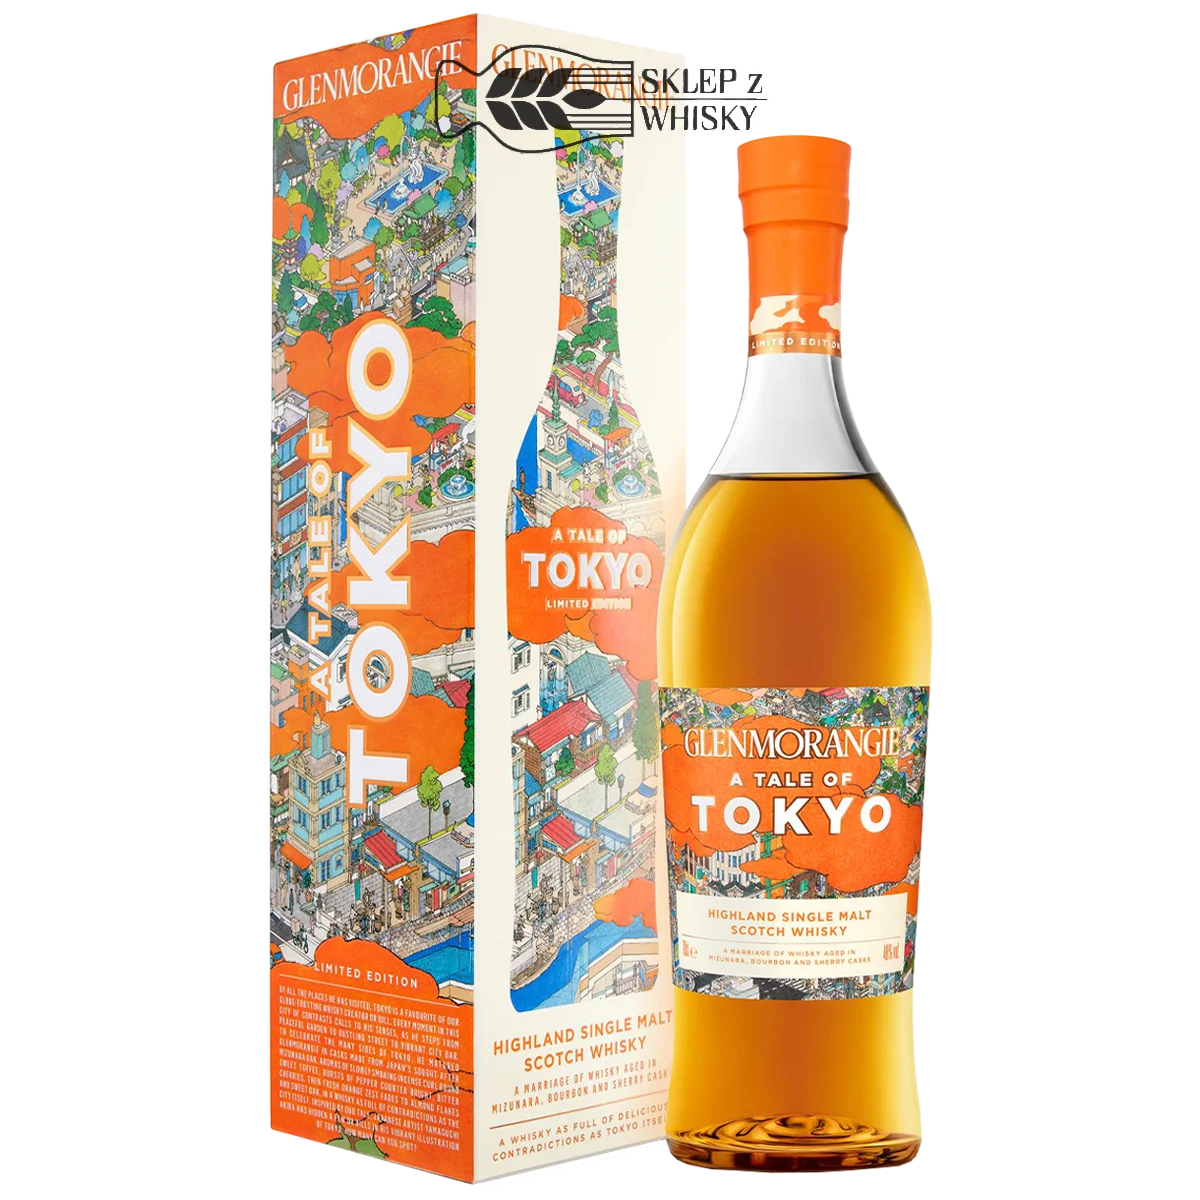 Glenmorangie A Tale Of Tokyo - szkocka whisky single malt z regionu Highland, 700 ml, w pudełku.